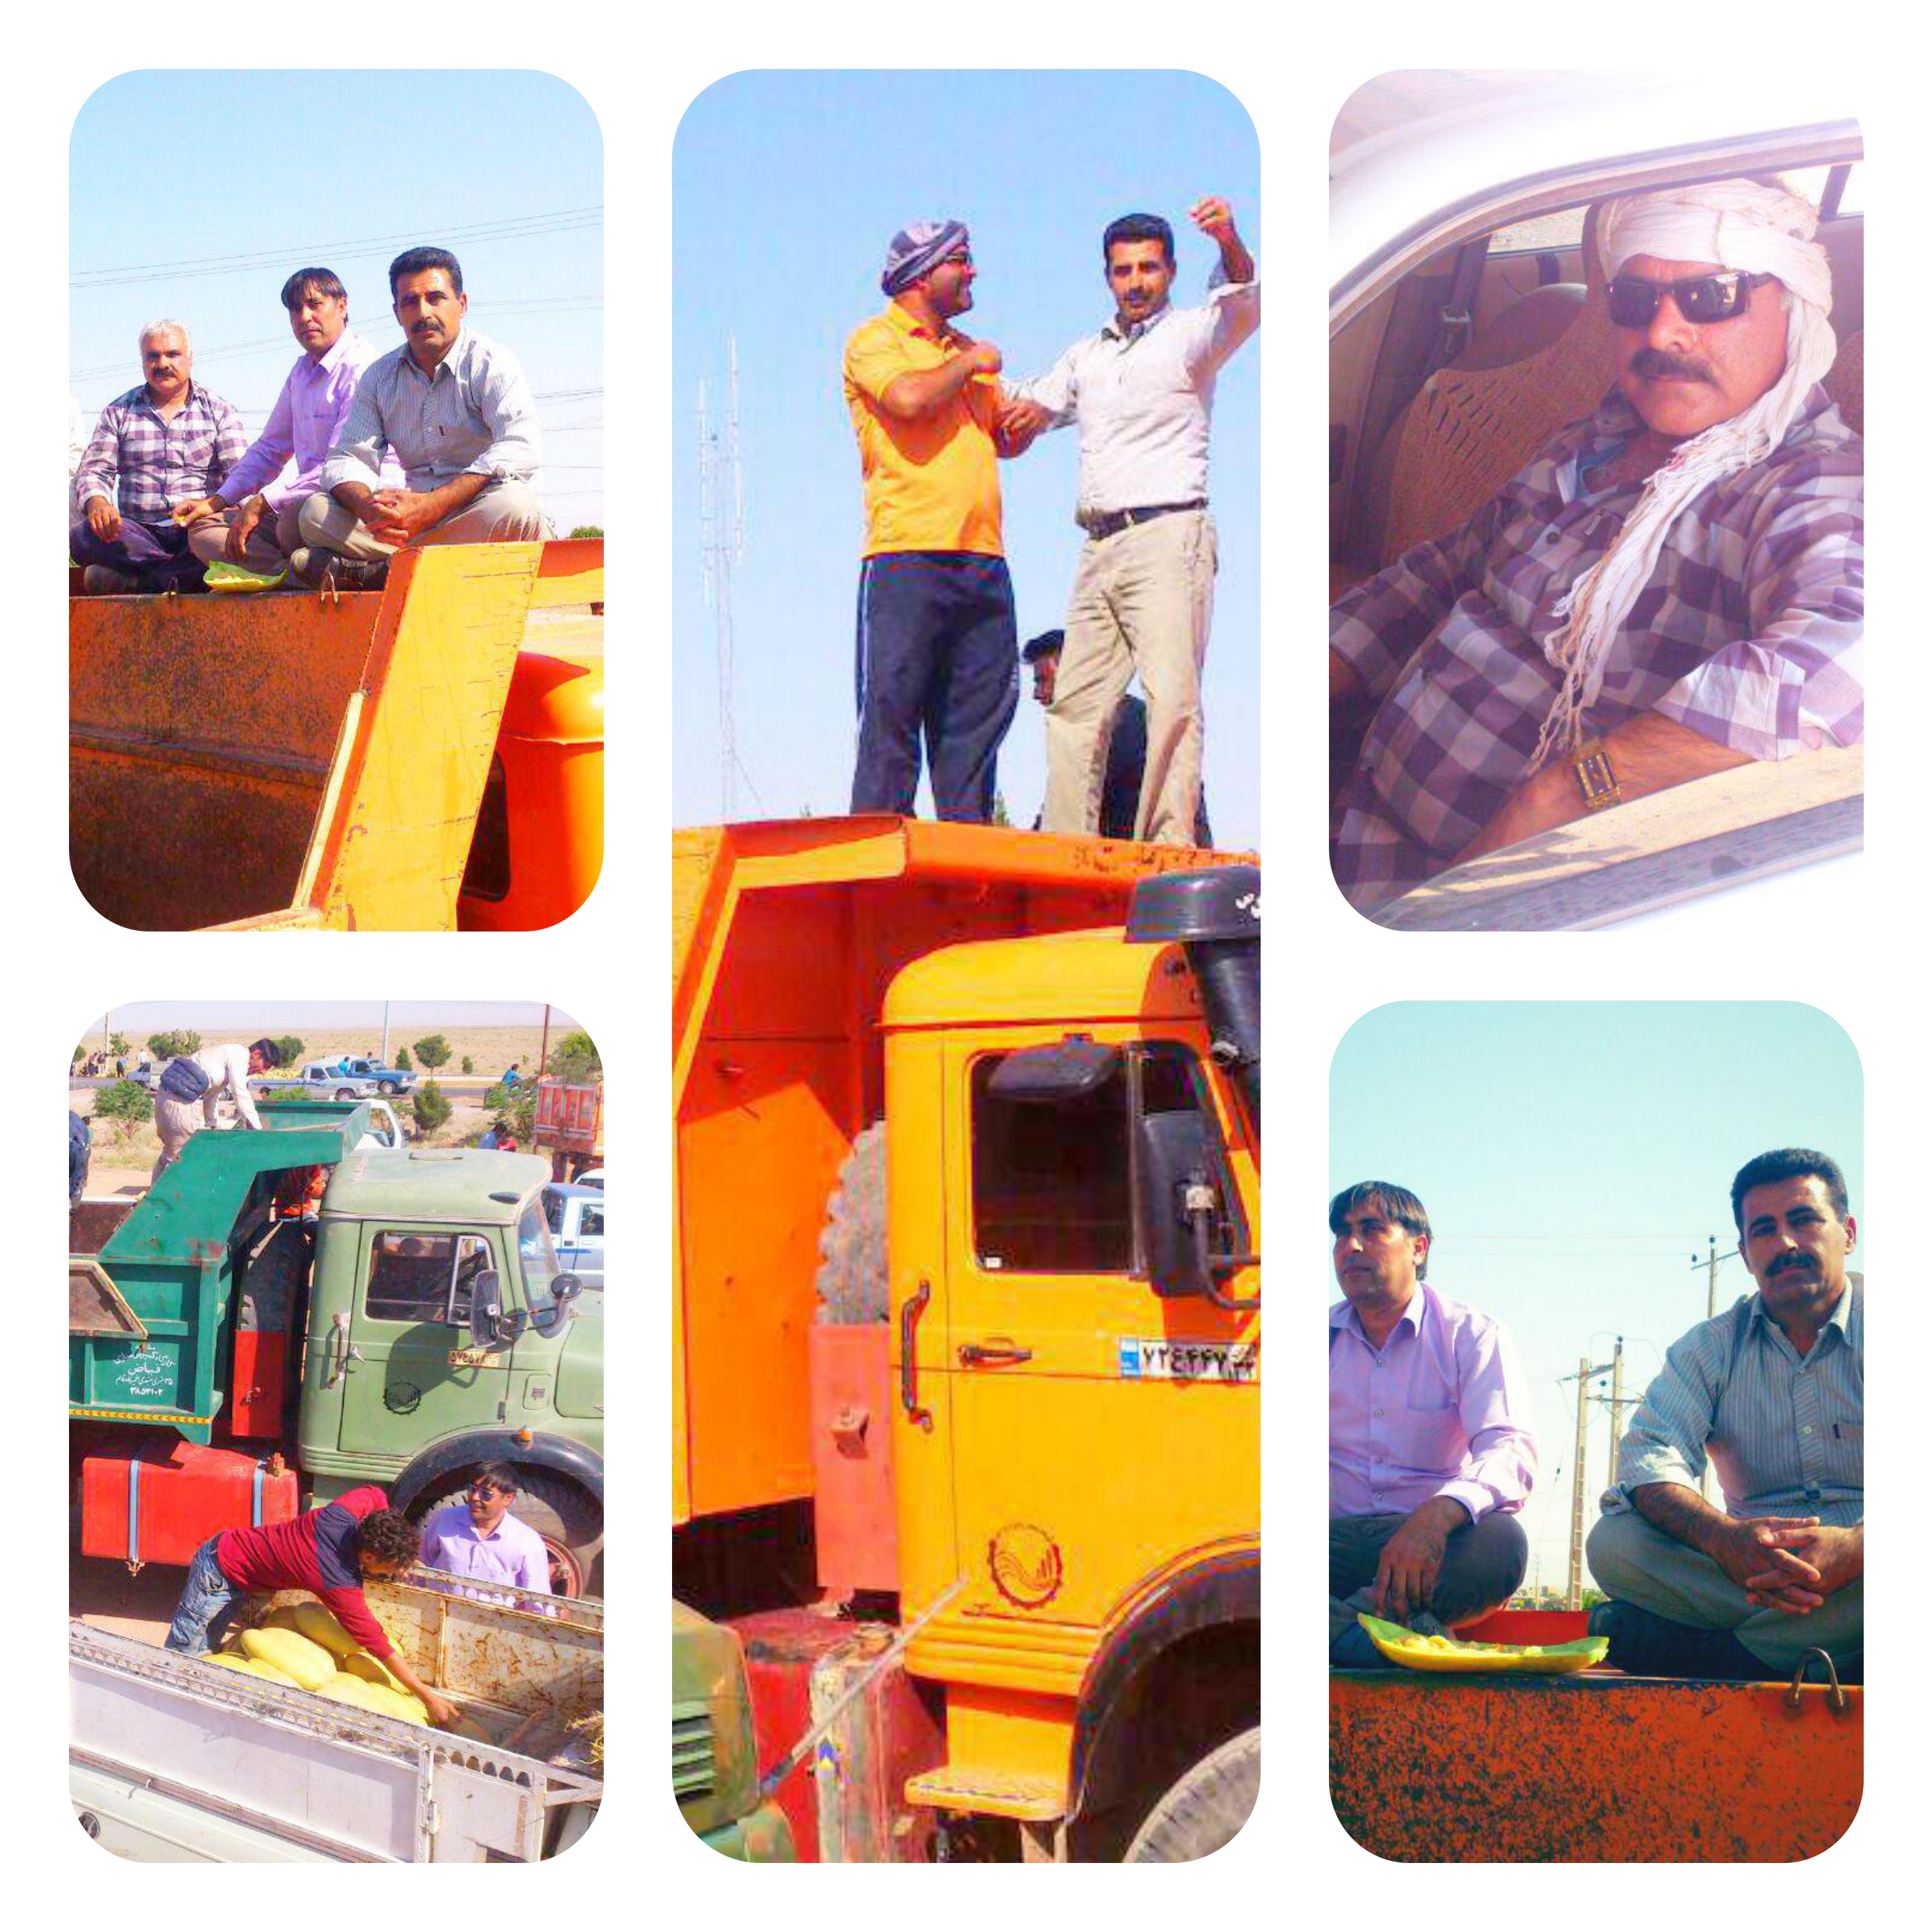 شرکت سهامی زراعی تربت جام » میدان بارخربزهای وازد کارگران شرکت زراعی نیلشهر